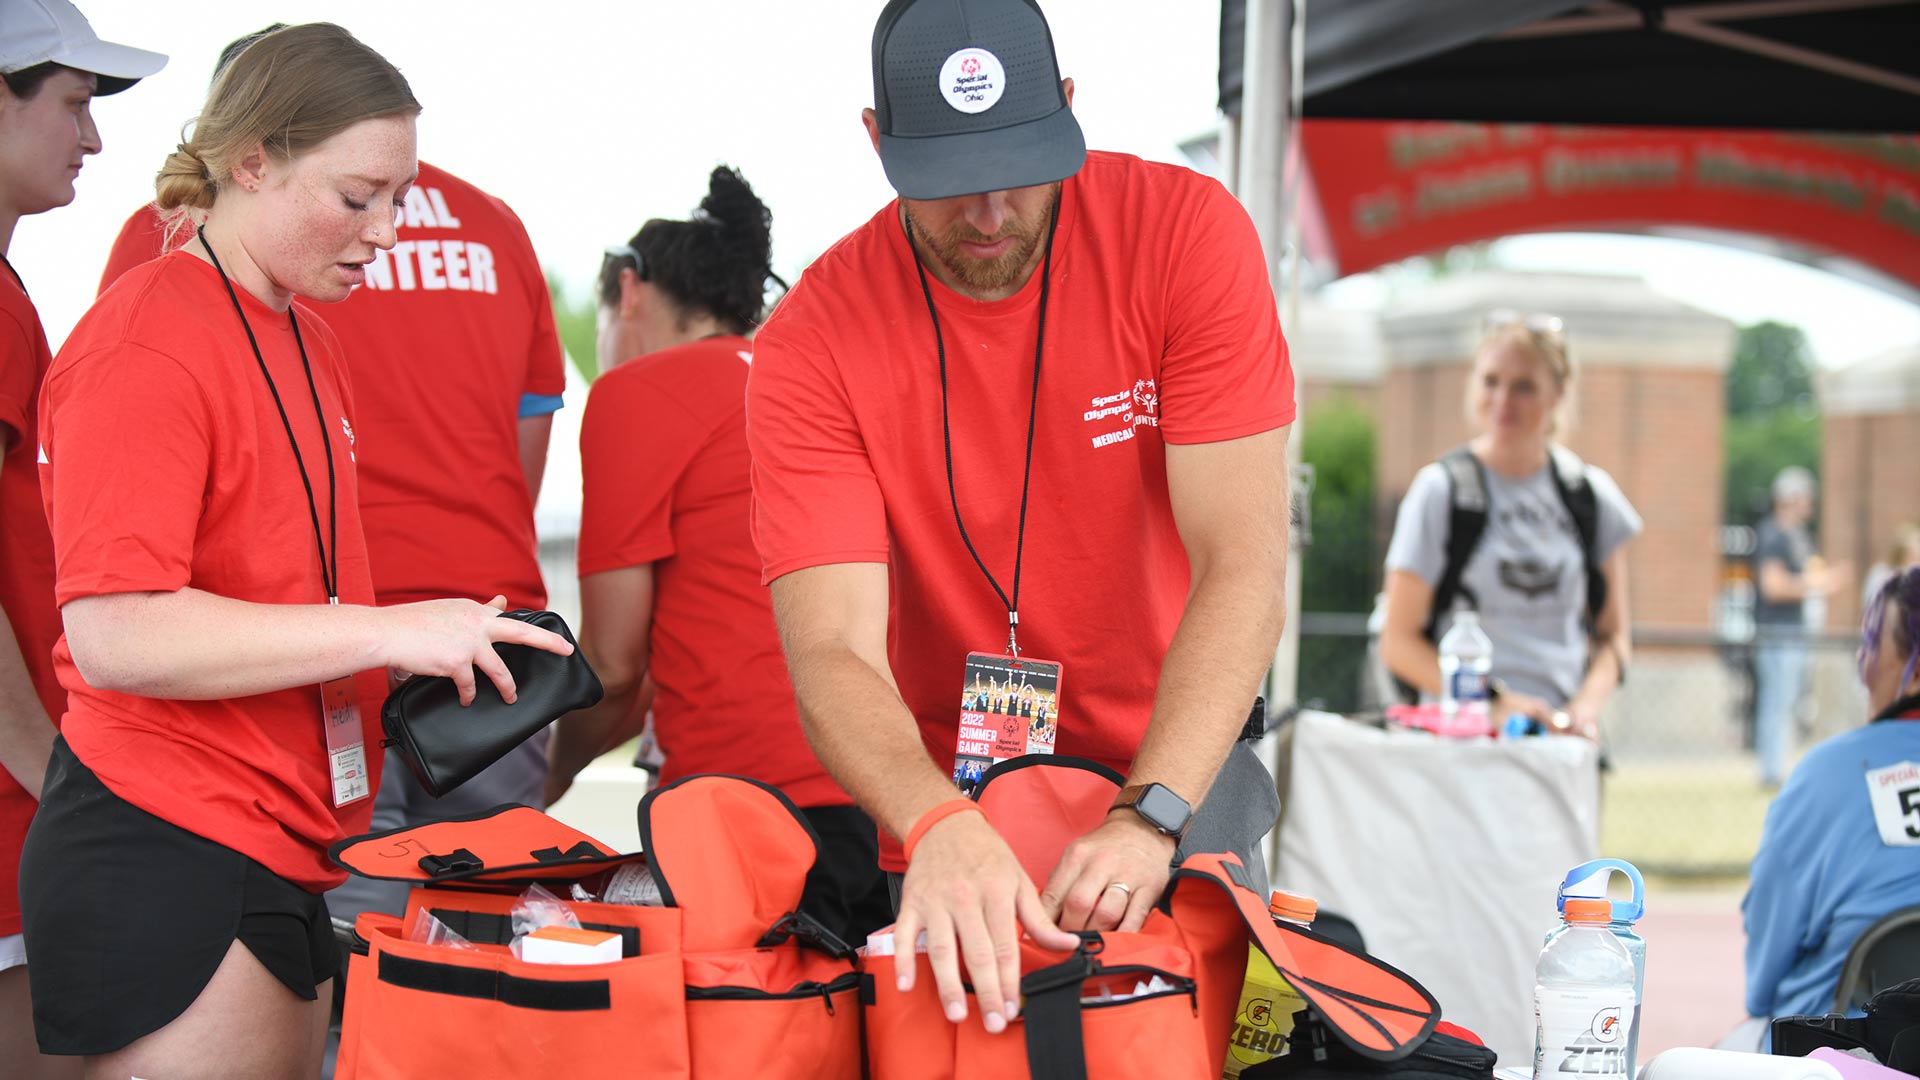 Medical volunteers preparing first aid bags